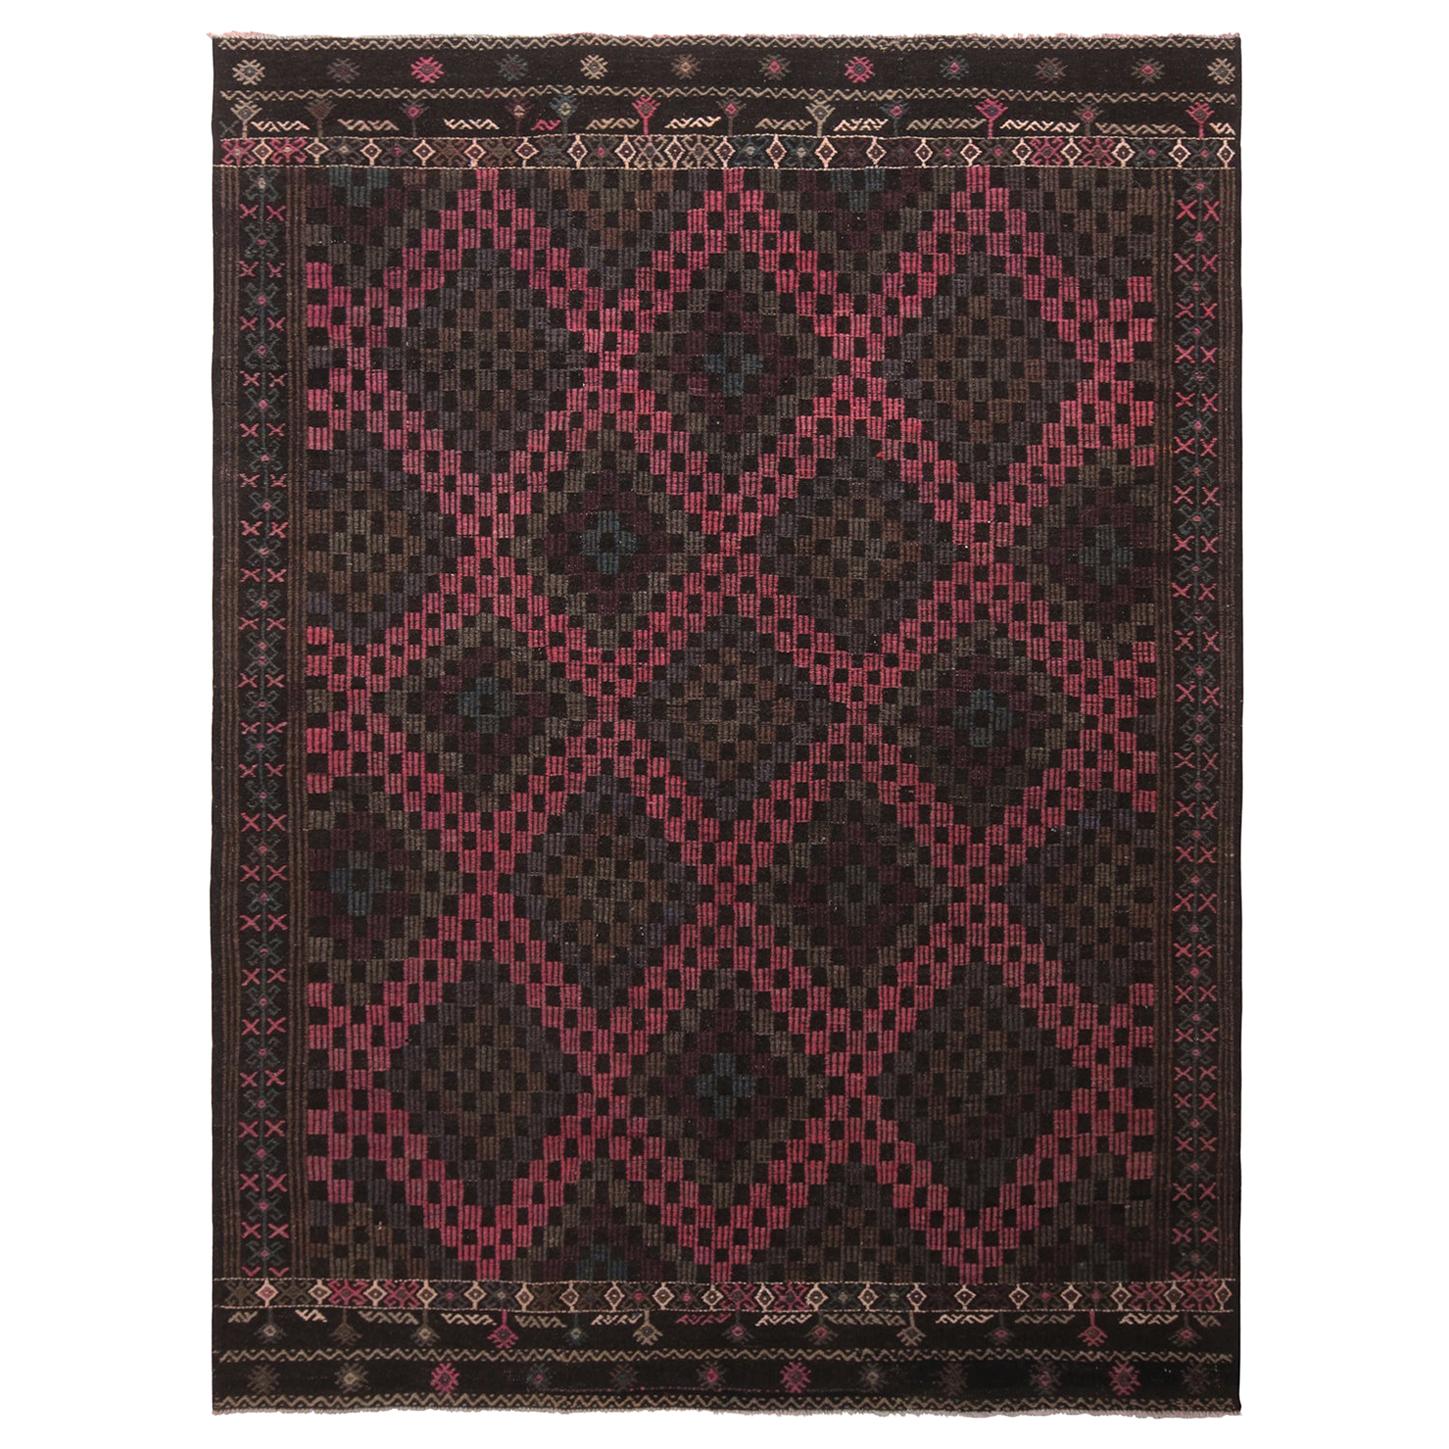 Vintage Midcentury Geometric Pink Purple and Brown Wool Kilim Rug by Rug & Kilim For Sale